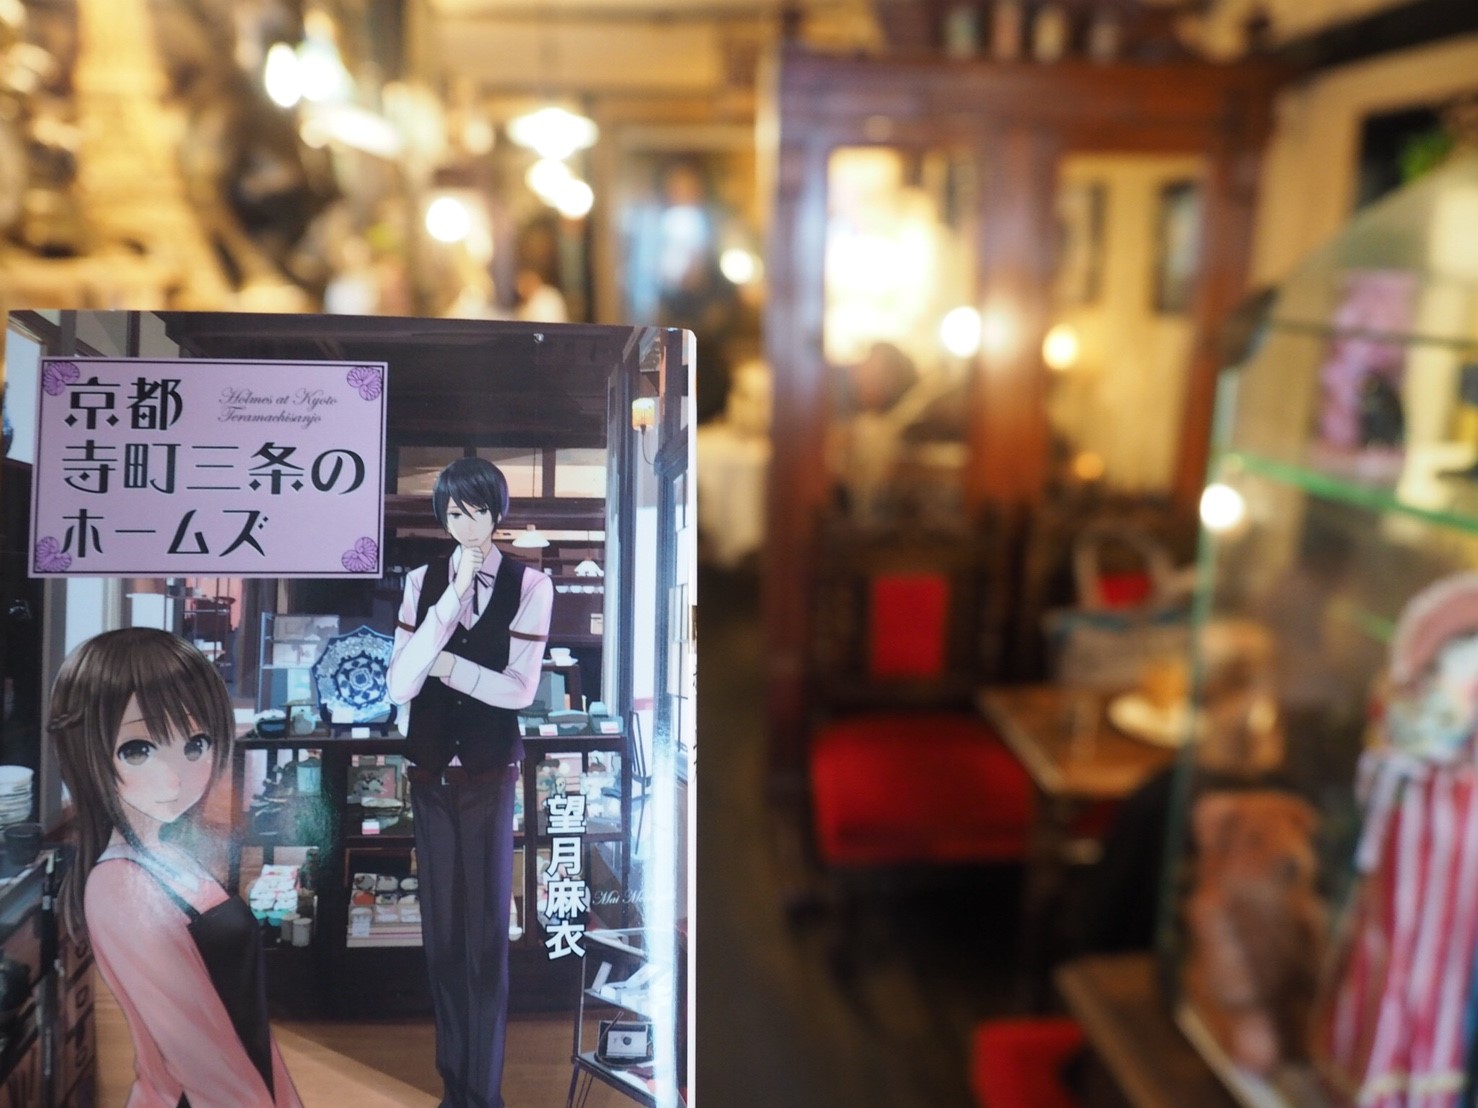 寺町三条のホームズ原作者 望月麻衣先生独占インタビュー 聖地巡礼 Kyoto Cmexポータルサイト